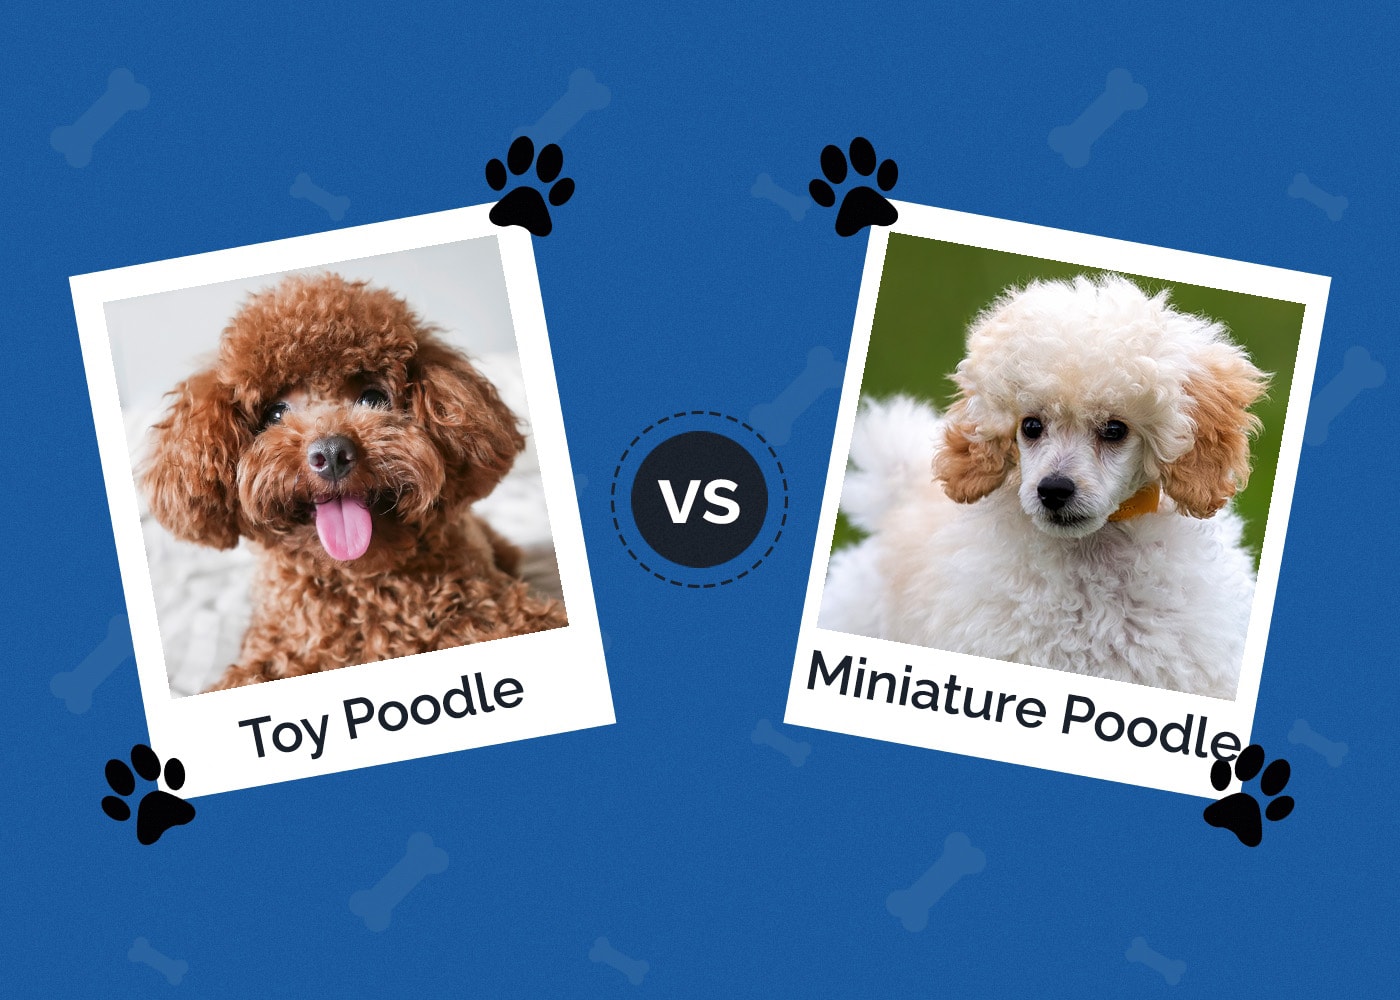 Toy Poodle vs Miniature Poodle